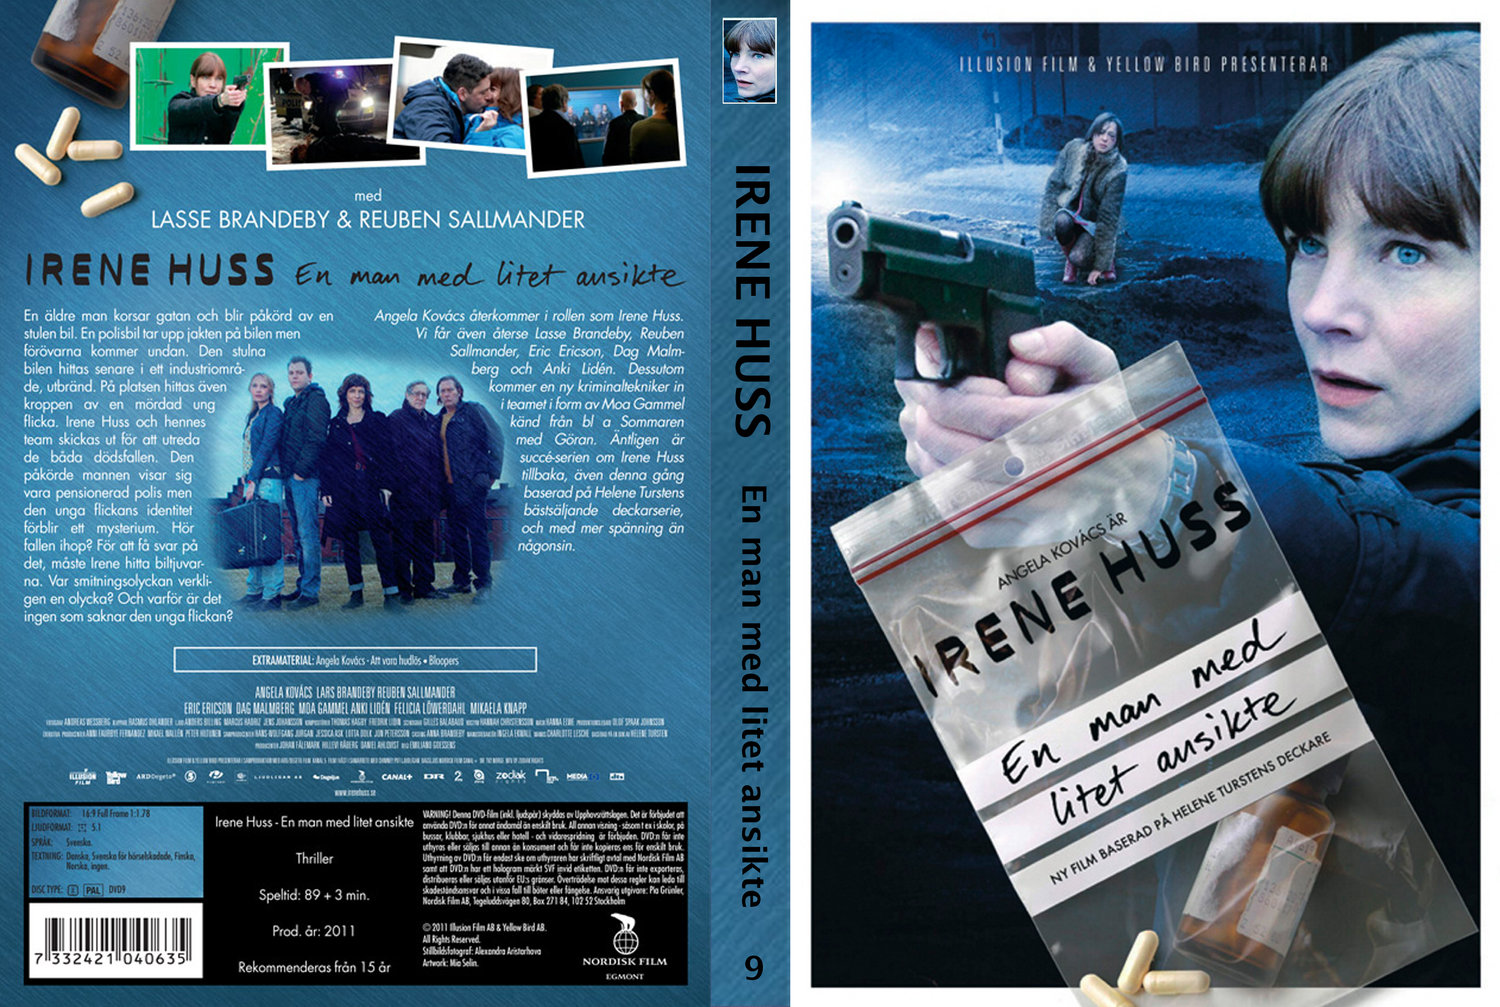 Irene Huss - S 2 Dvd 2 - En man det litet ansikte